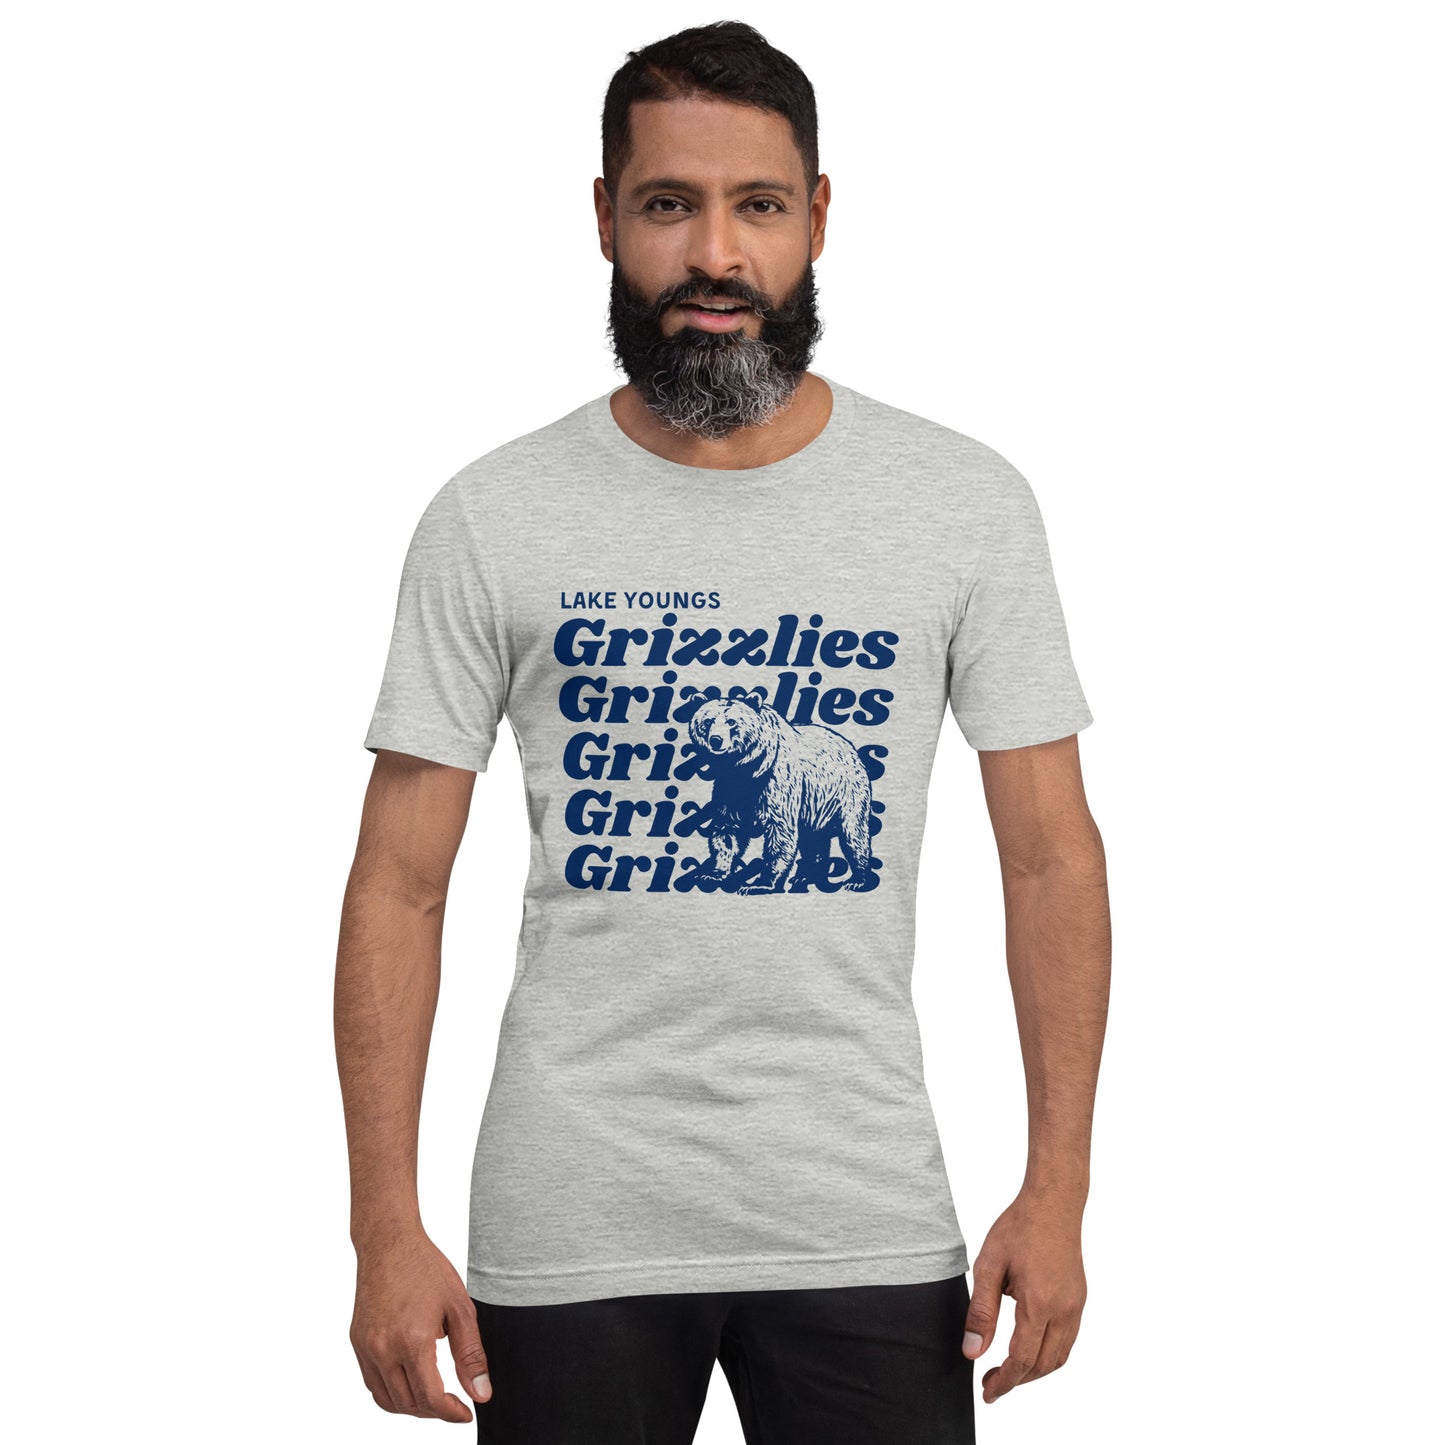 Navy Blue “Grizzlies” Adult Short Sleeve T-Shirt